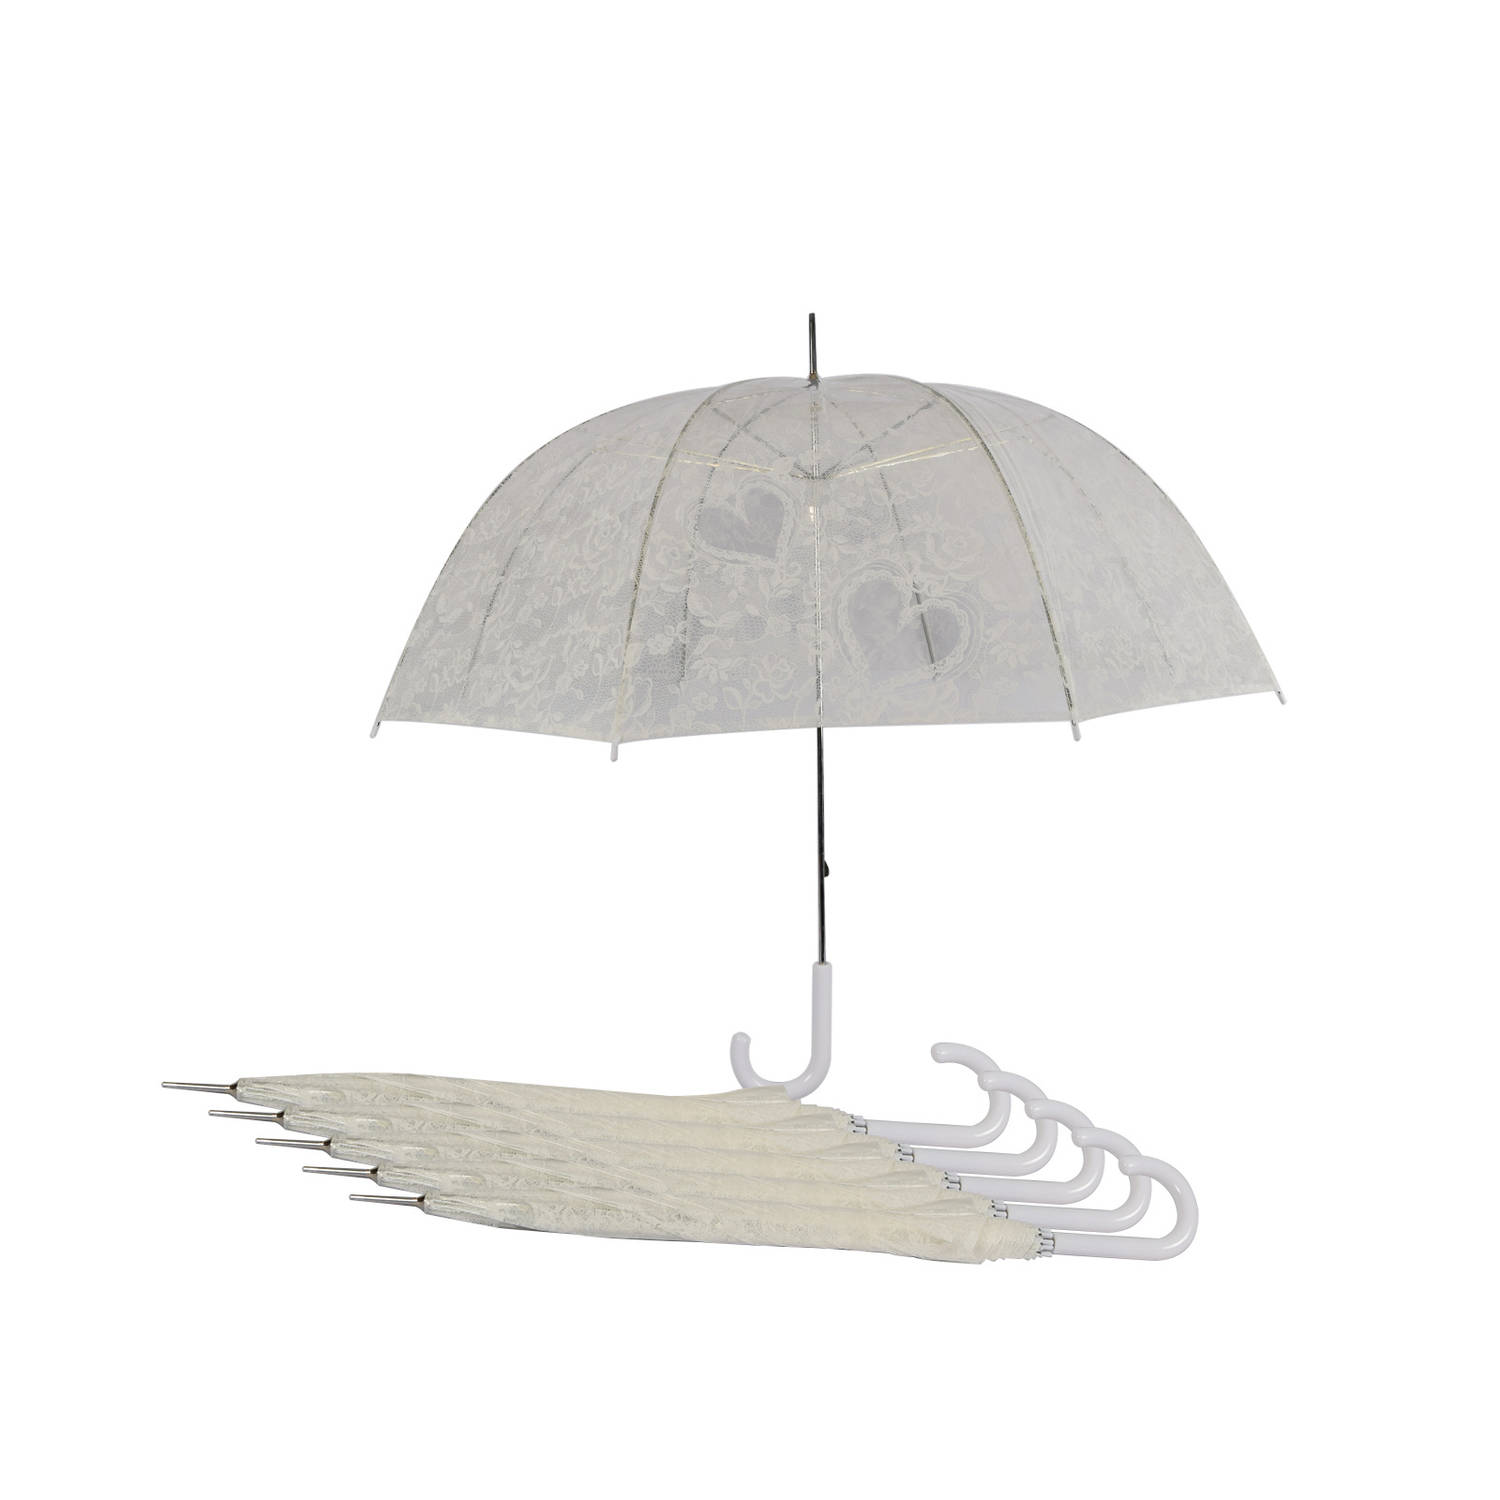 Romantische Doorzichtige Trouwparaplu's - Set van 6 - Perfect voor Bruiloften - Transparante Paraplu met Hartjes | Windproof | 98cm Diameter